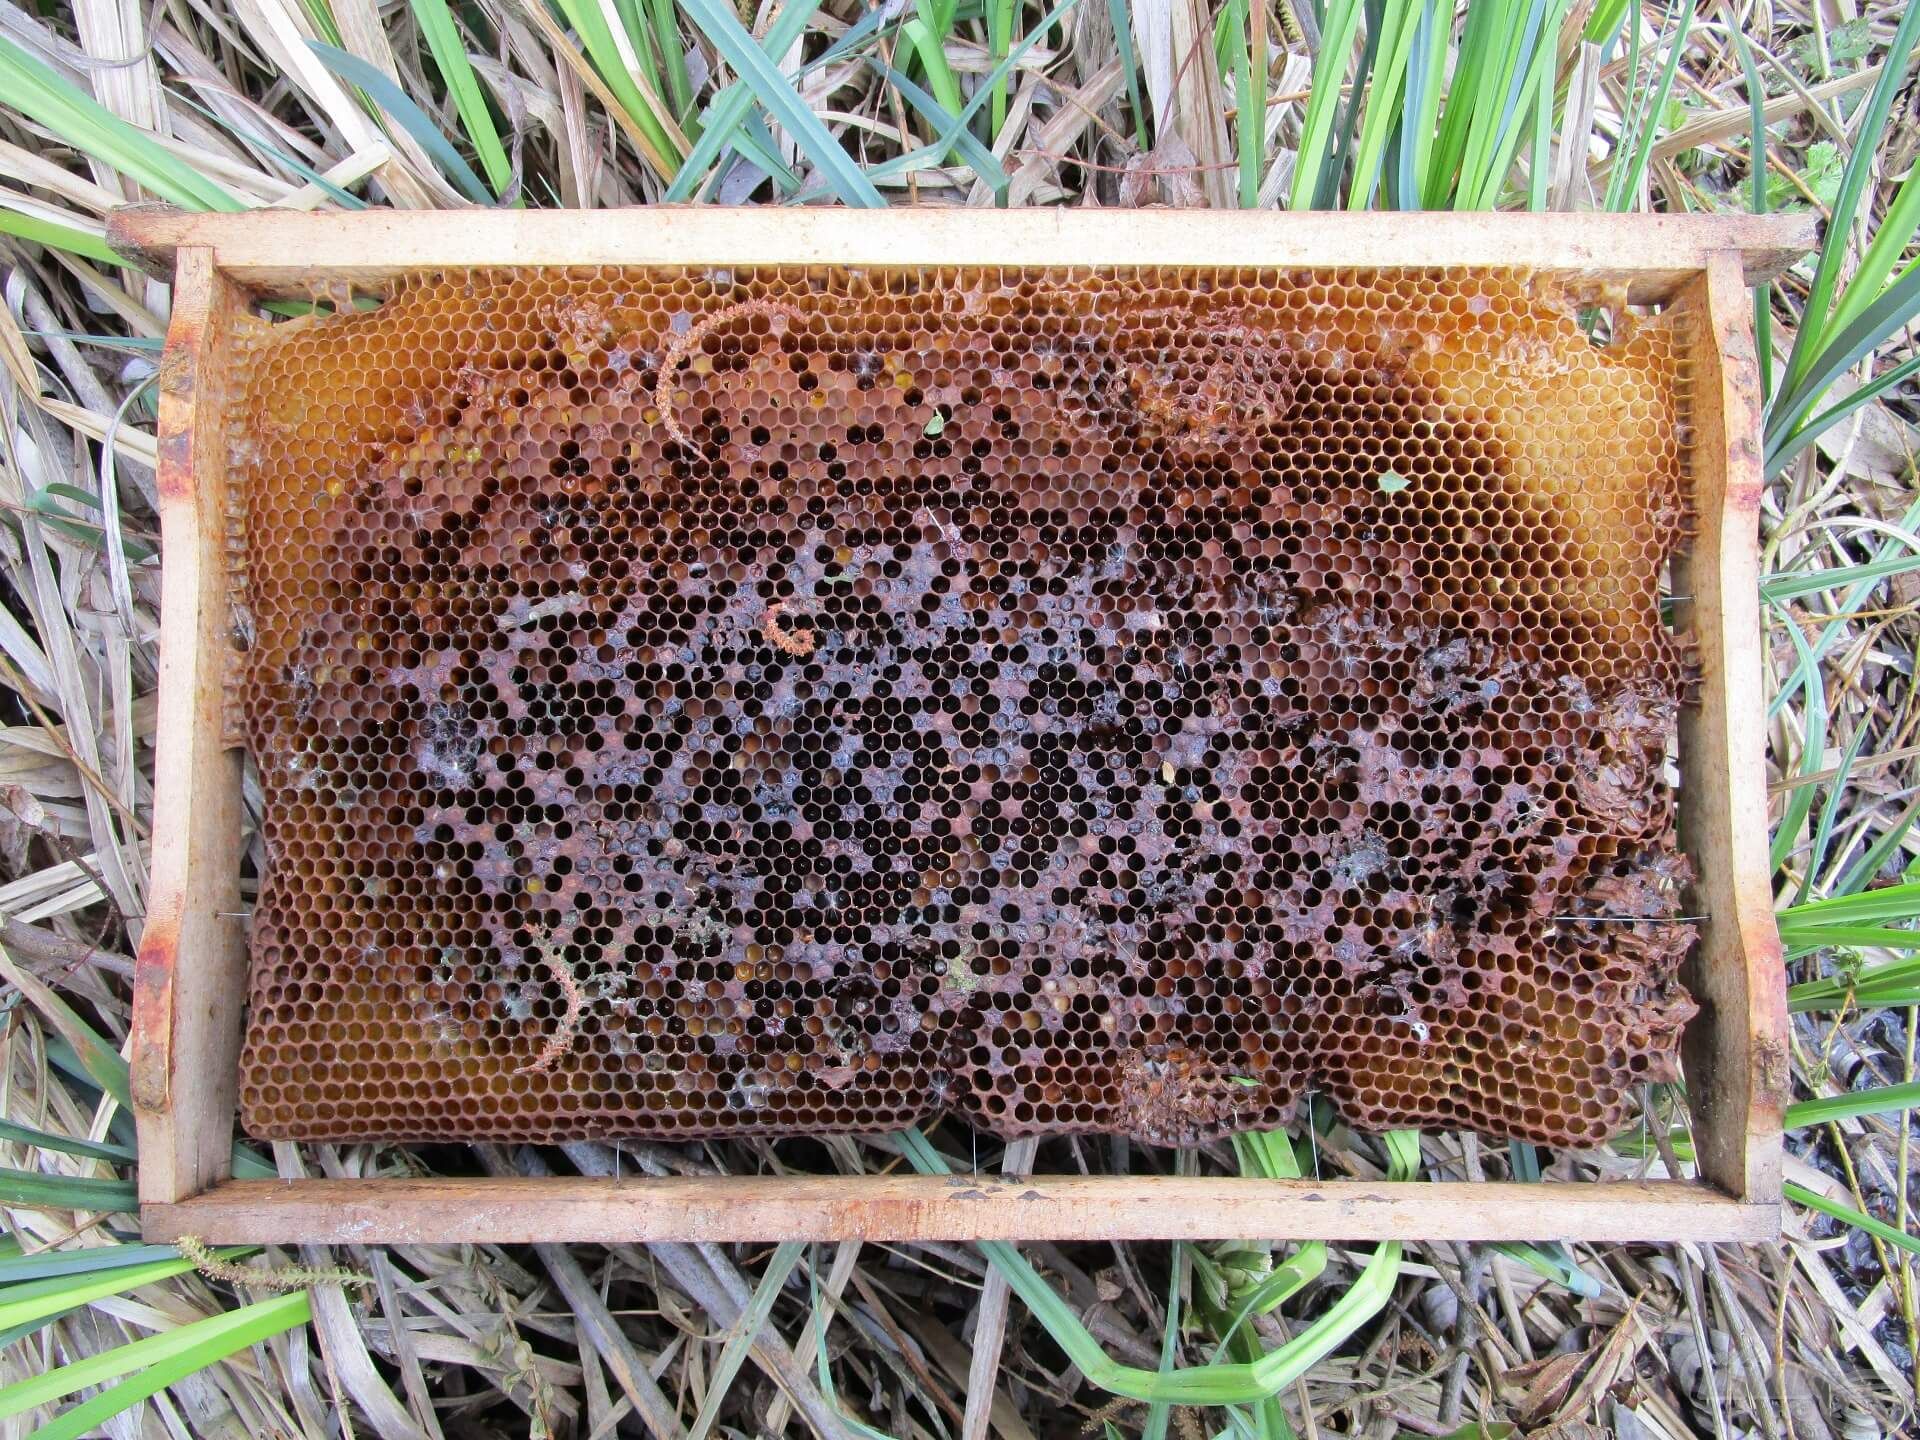 Egy méhkaptárból kiszedett lépet találtam a horgászhelyen. Lehet, hogy valaki méhlárvákat használt csalinak?